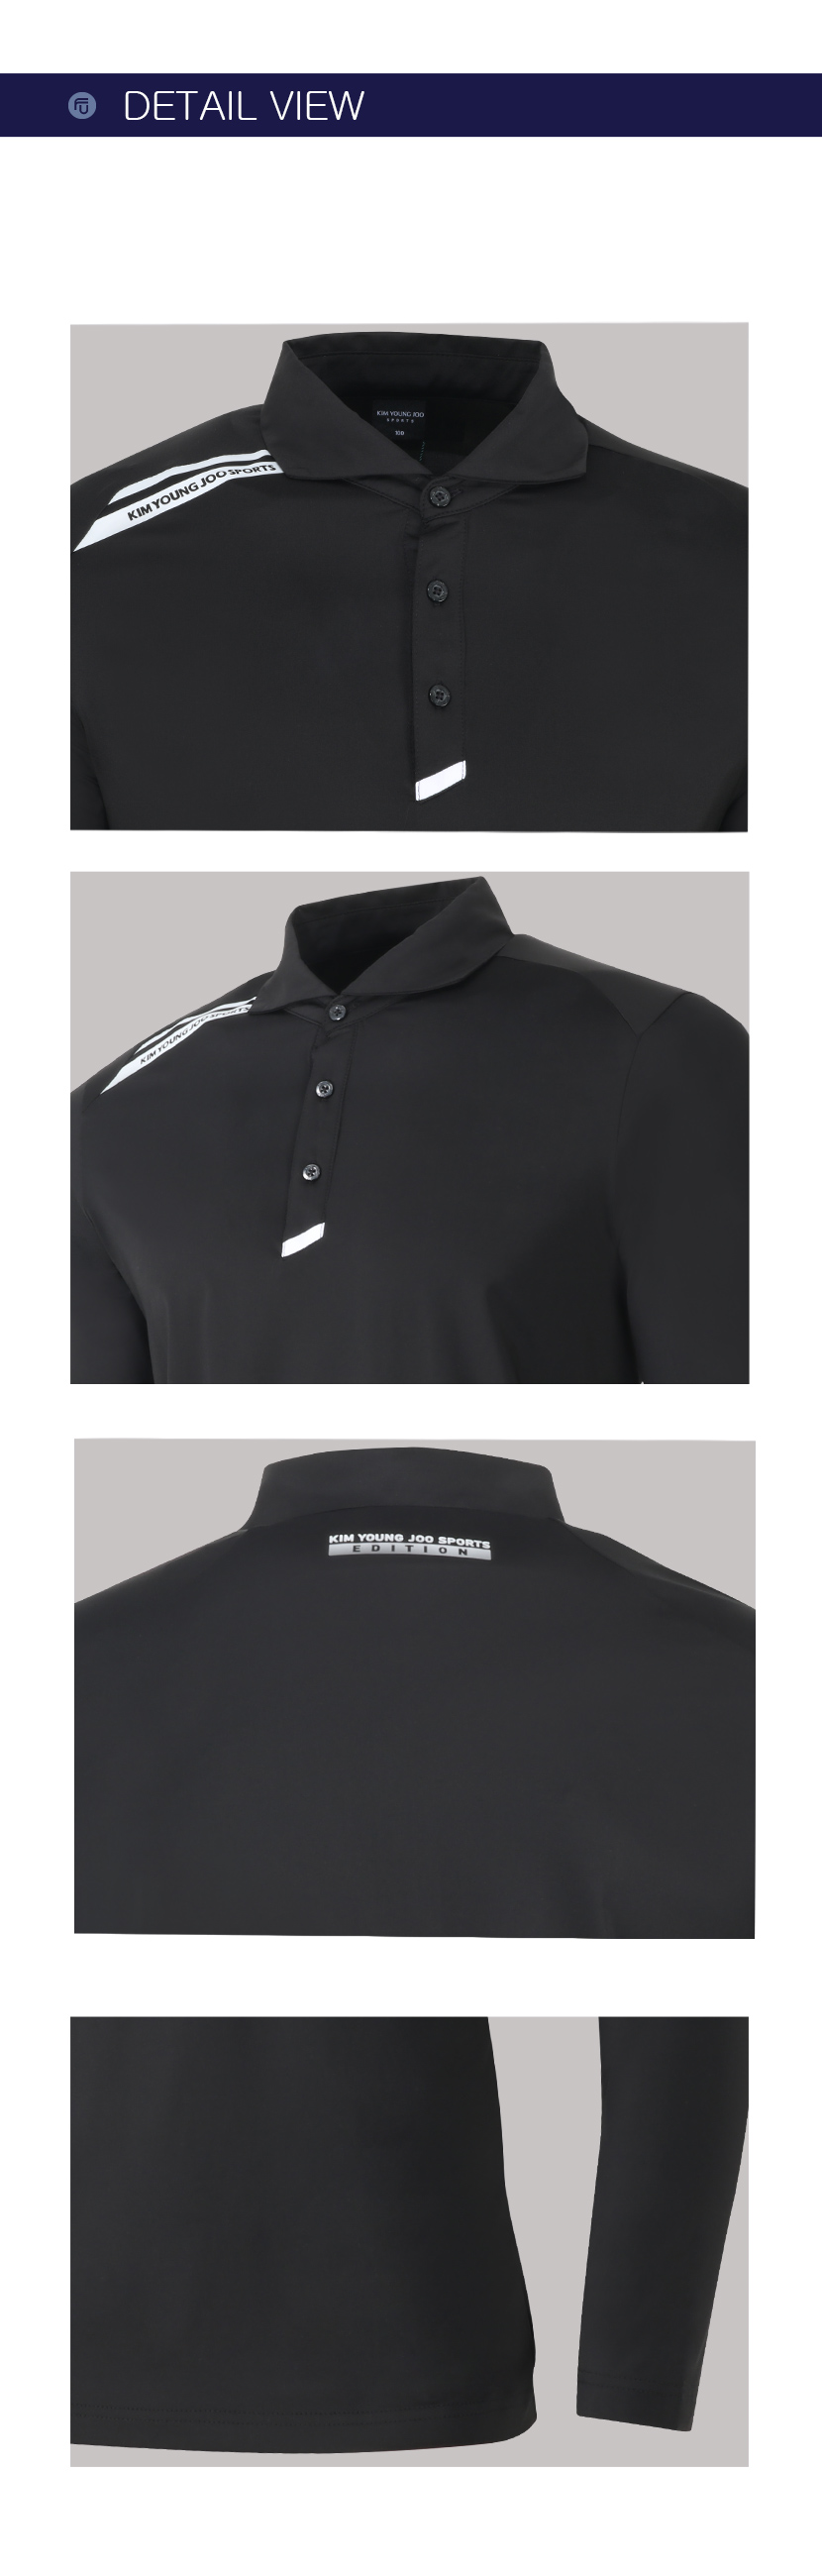 페라어스 남성 골프 어깨 로고라인 티셔츠 CTJYJ2001S2